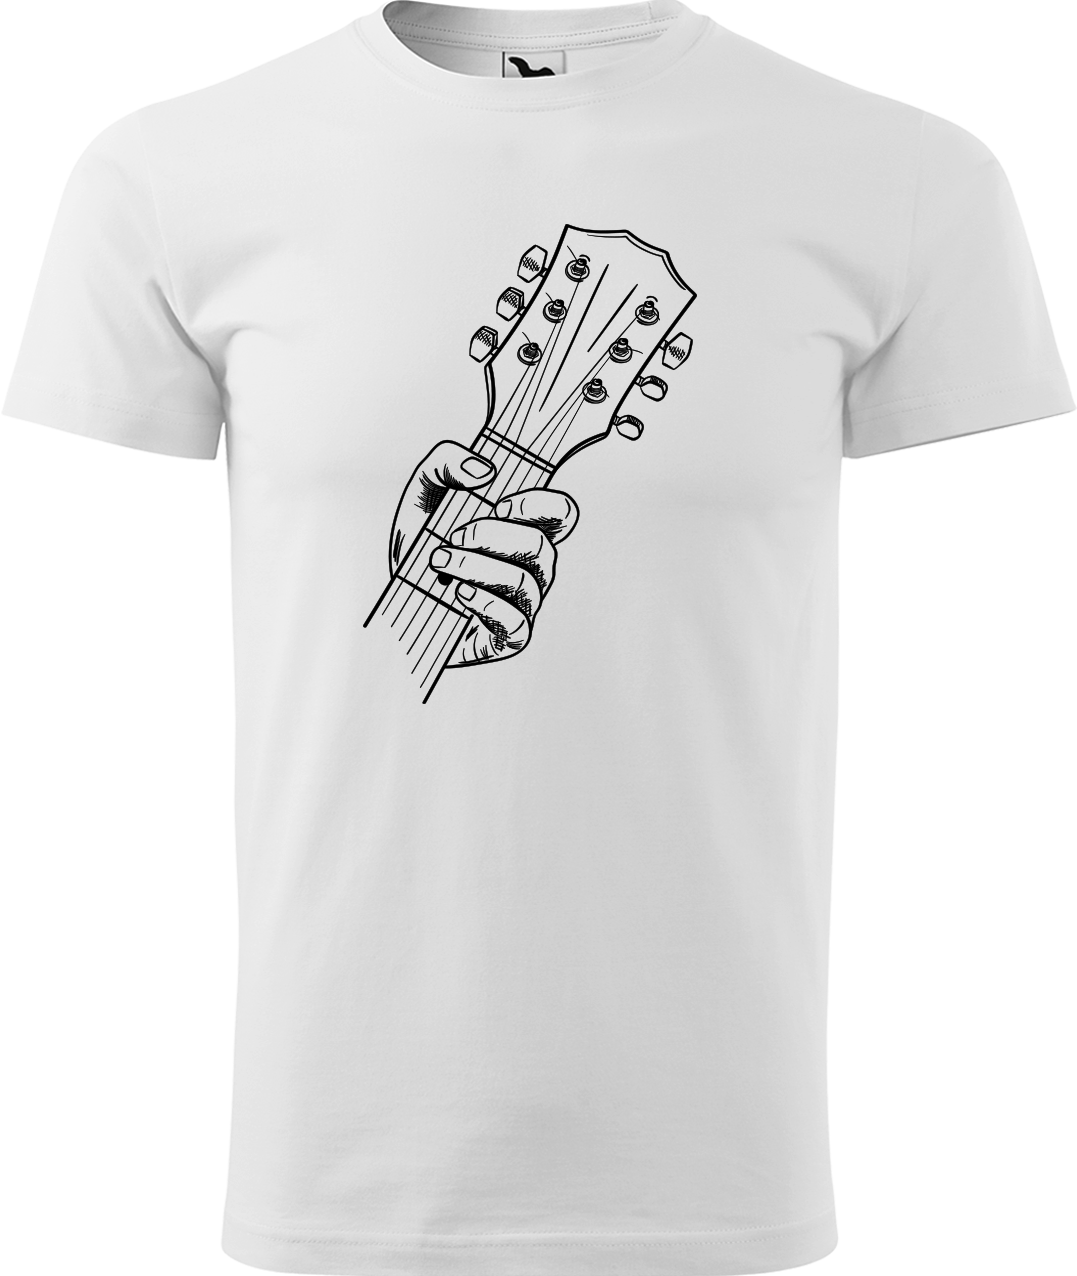 Pánské tričko s kytarou - Hlava kytary Velikost: S, Barva: Bílá (00)